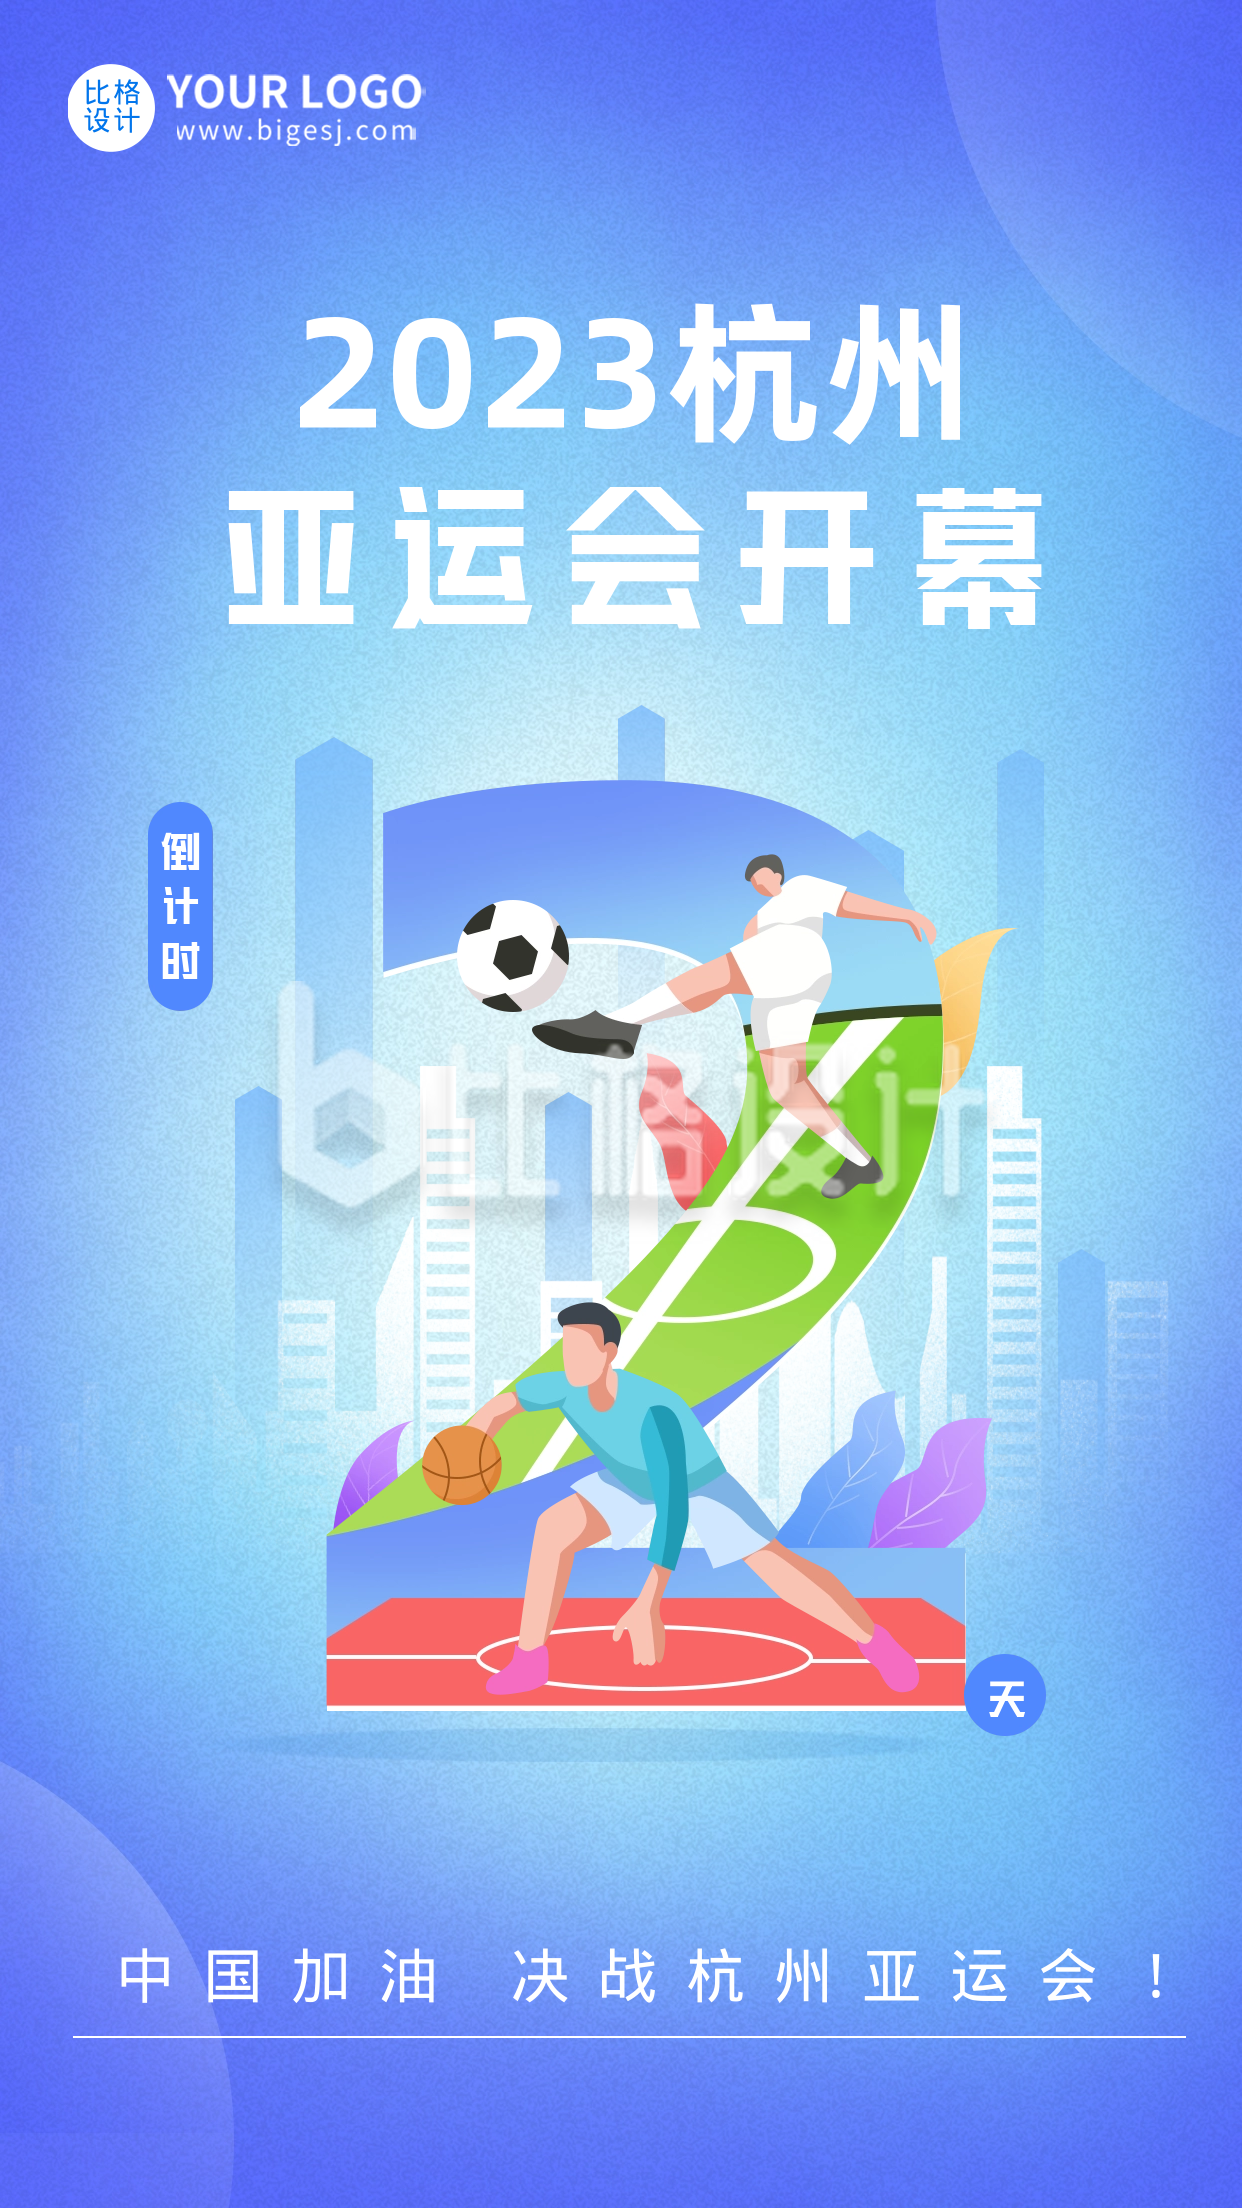 杭州亚运会倒计时2天宣传海报